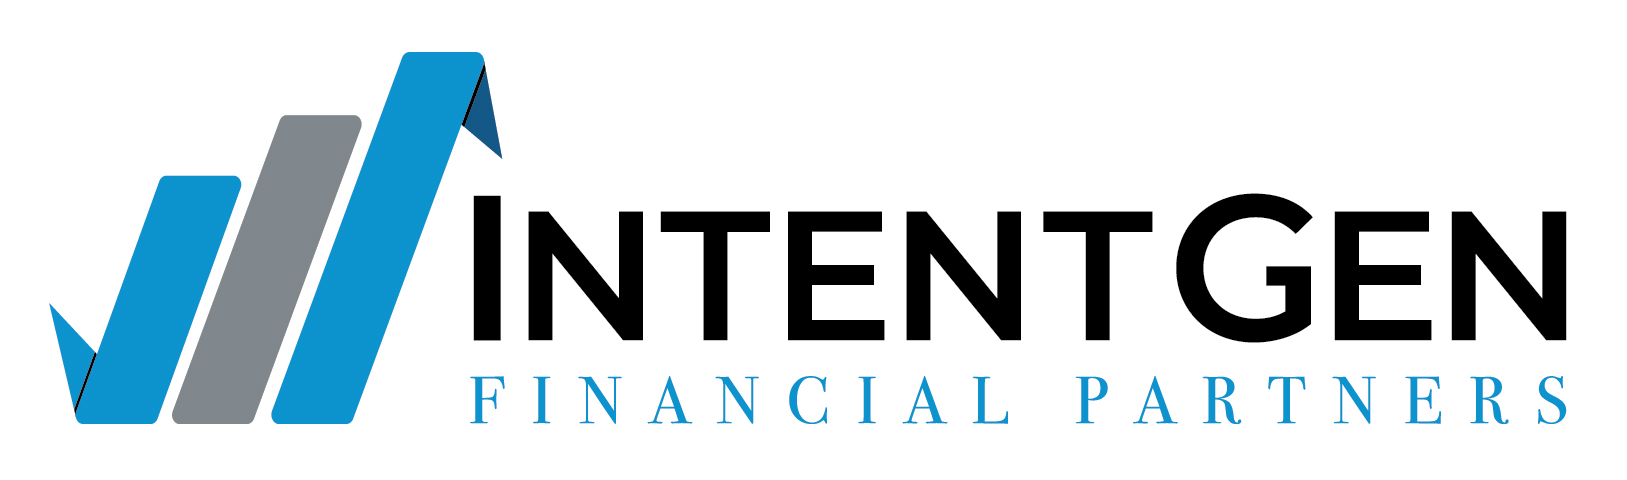 IntentGen Logo.jpg